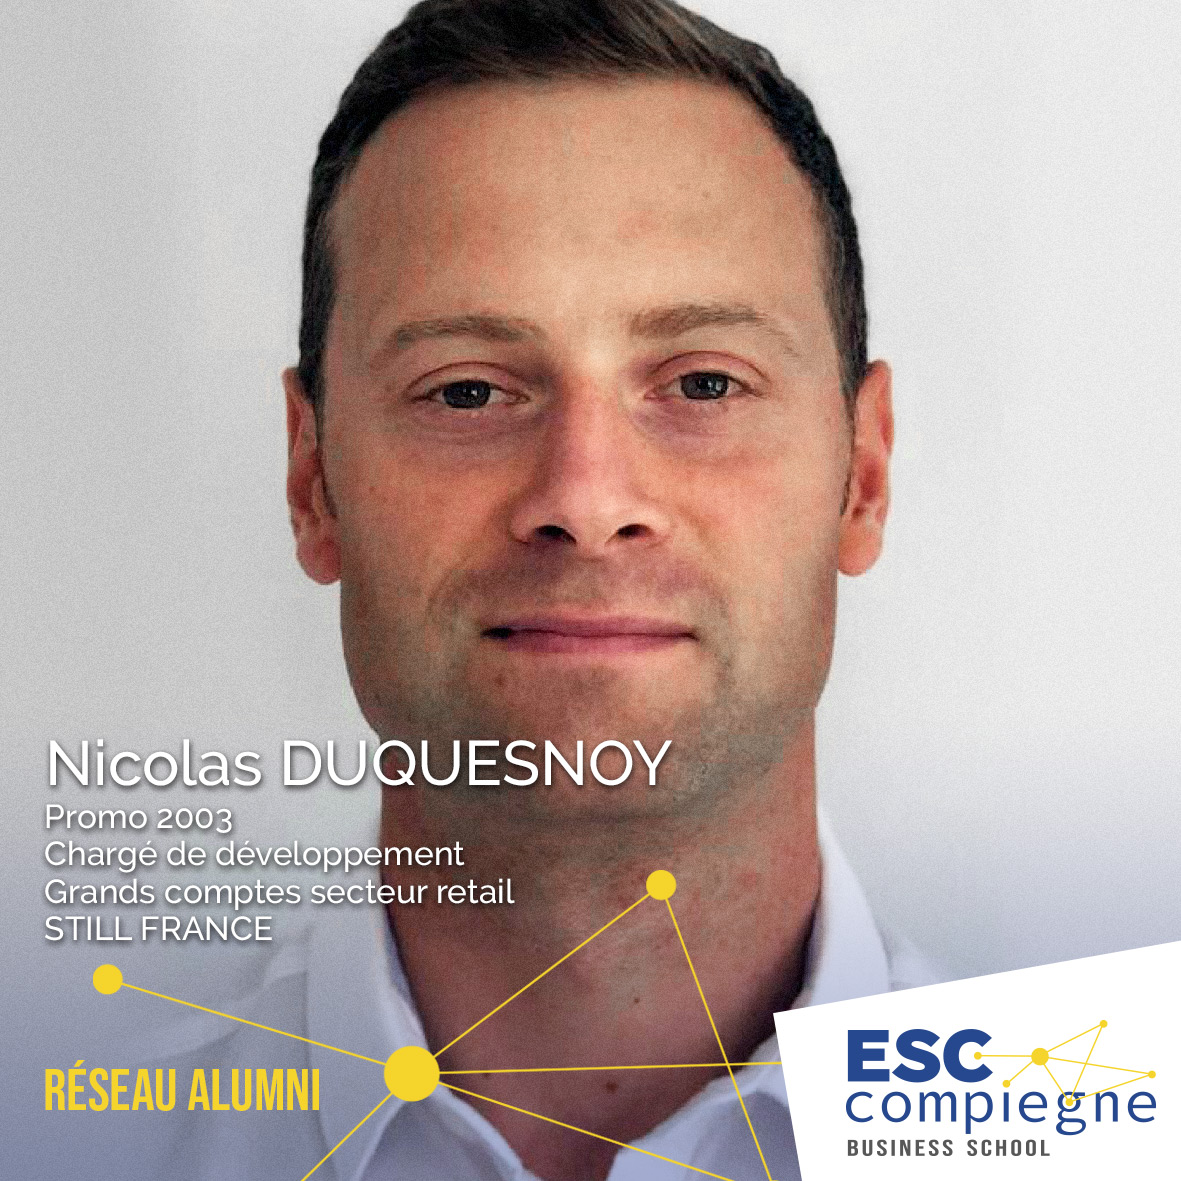 ESCC-Nicolas-Duquesnoy